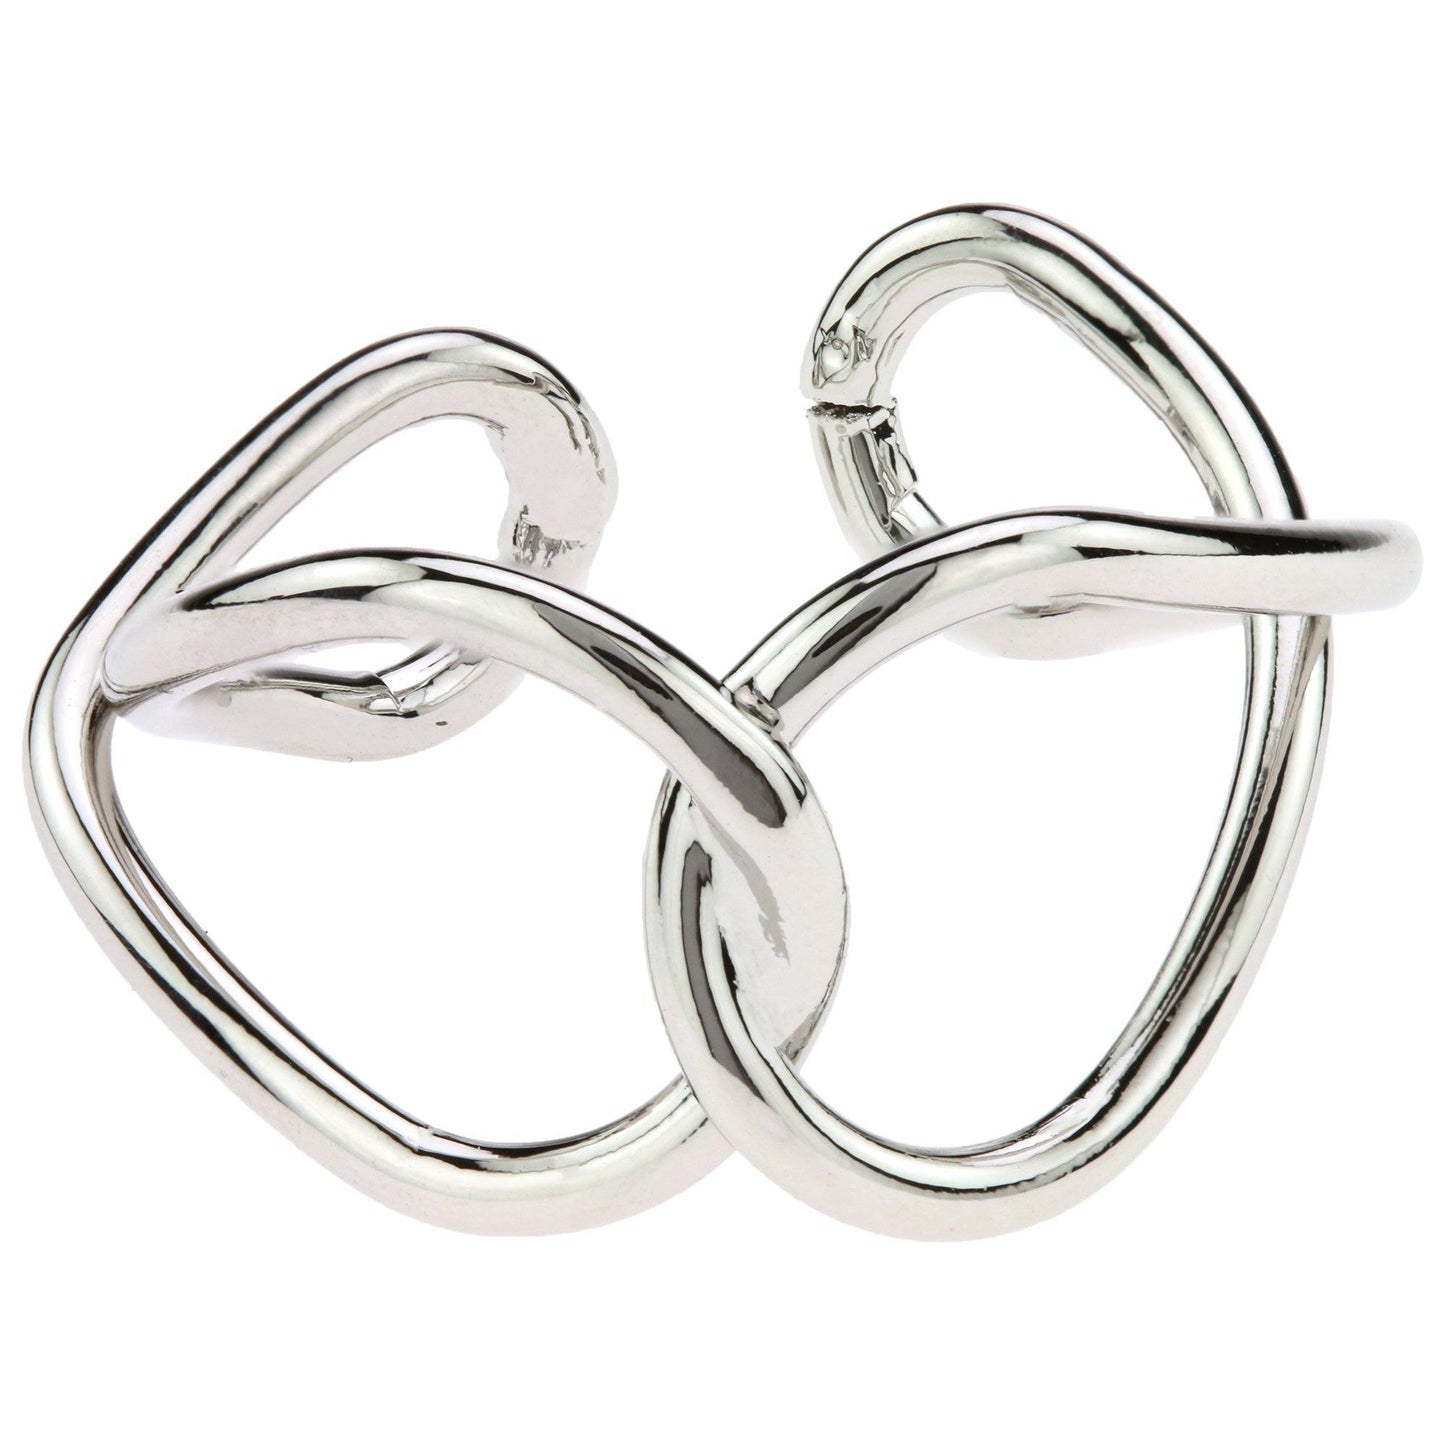 Infinity Loop Adjustable Ring